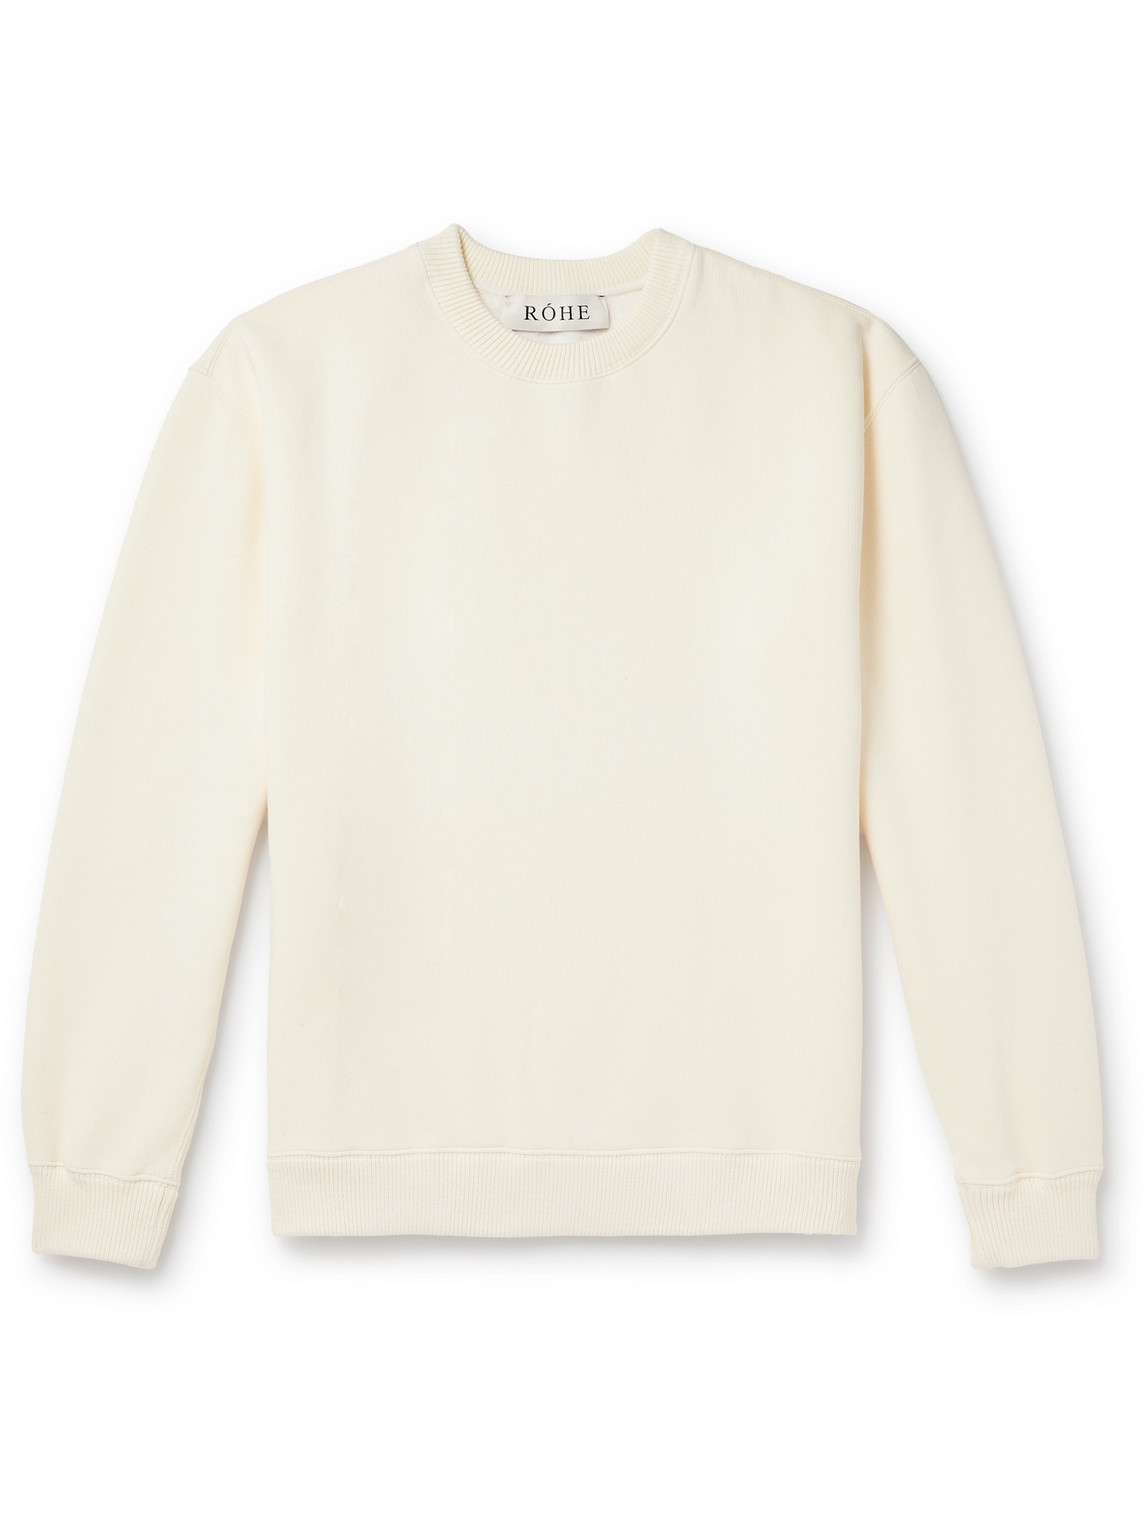 RÓHE - Cotton-Blend Jersey Sweatshirt - Men - Neutrals - S von RÓHE